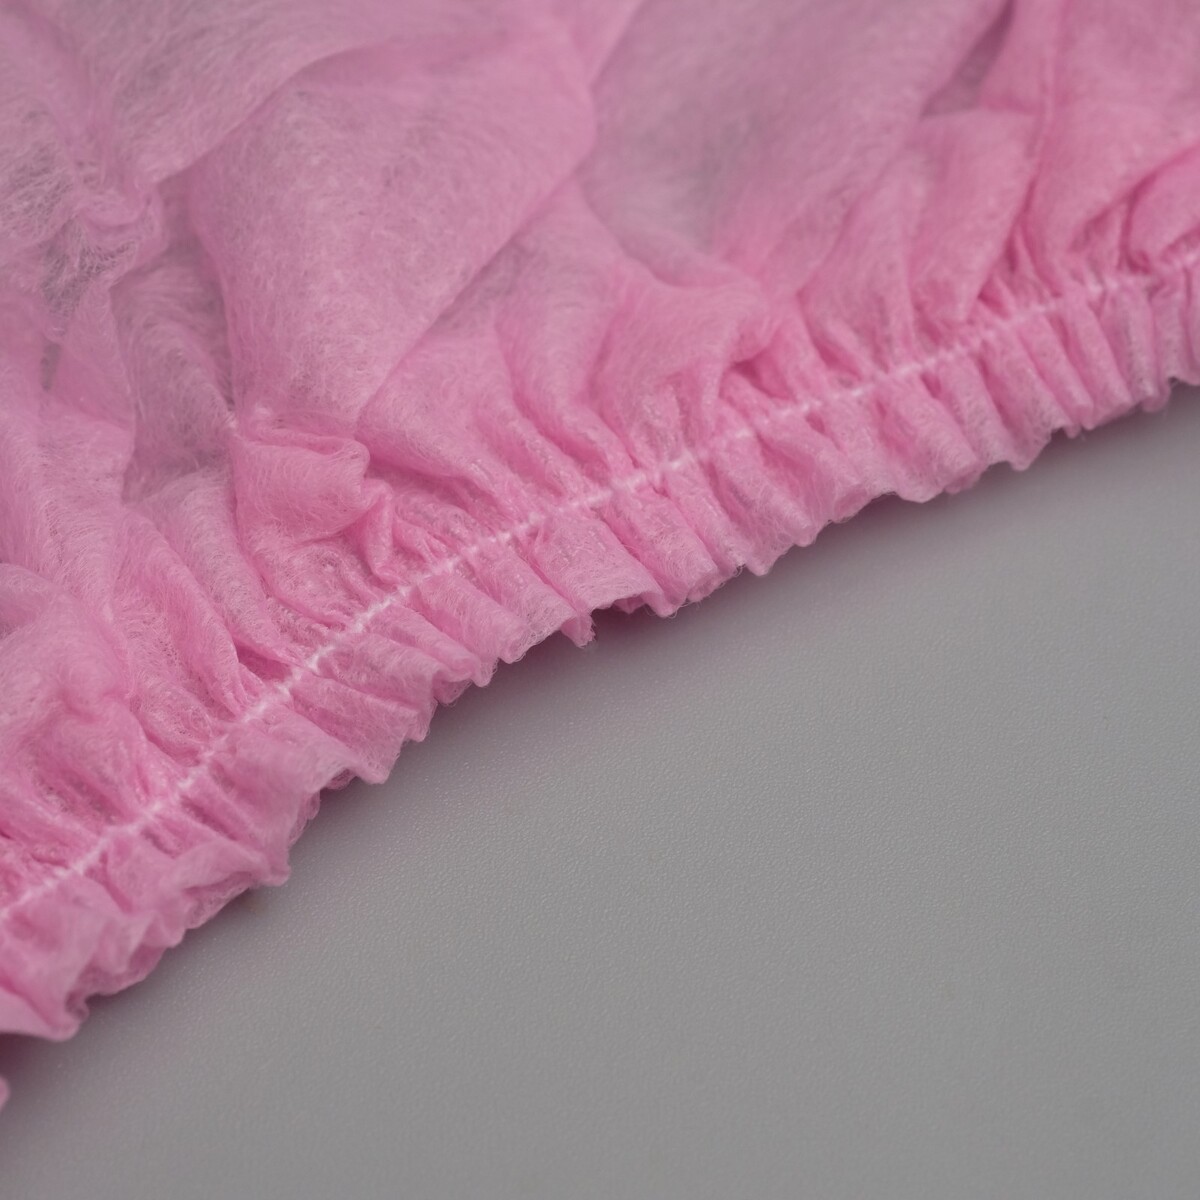 Носки одноразовые из нетканного материала для прокатной обуви, розовые. 43-44 рр No brand, цвет розовый 03311157 - фото 2